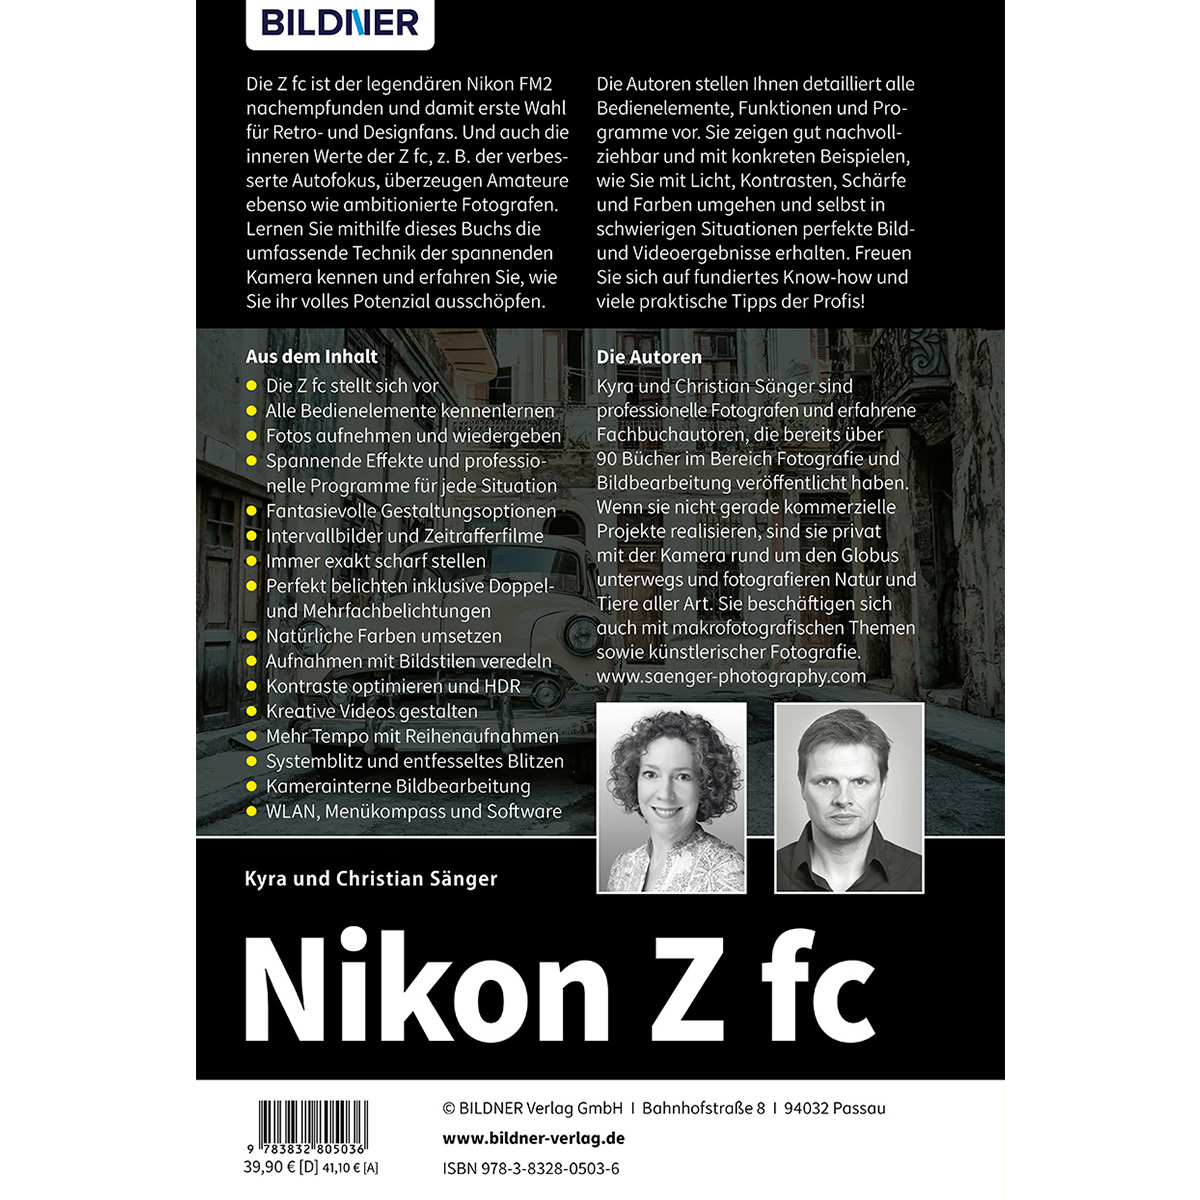 Nikon Z fc - Das Kamera zu umfangreiche Praxisbuch Ihrer